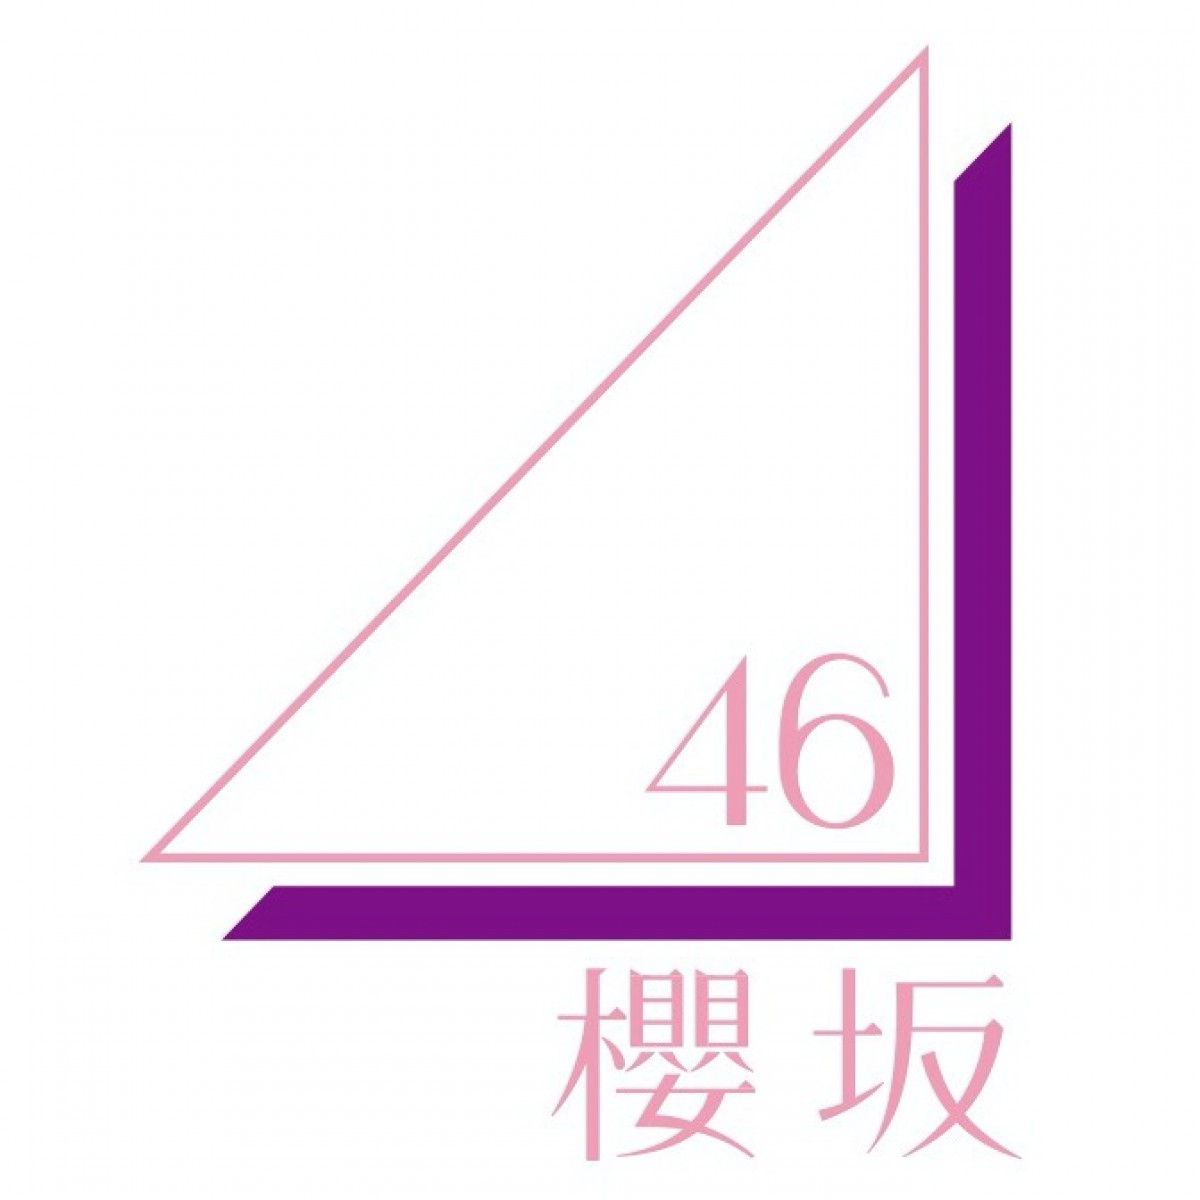 欅坂46新グループ名「櫻坂46」グループカラーは白　菅井友香コメント全文